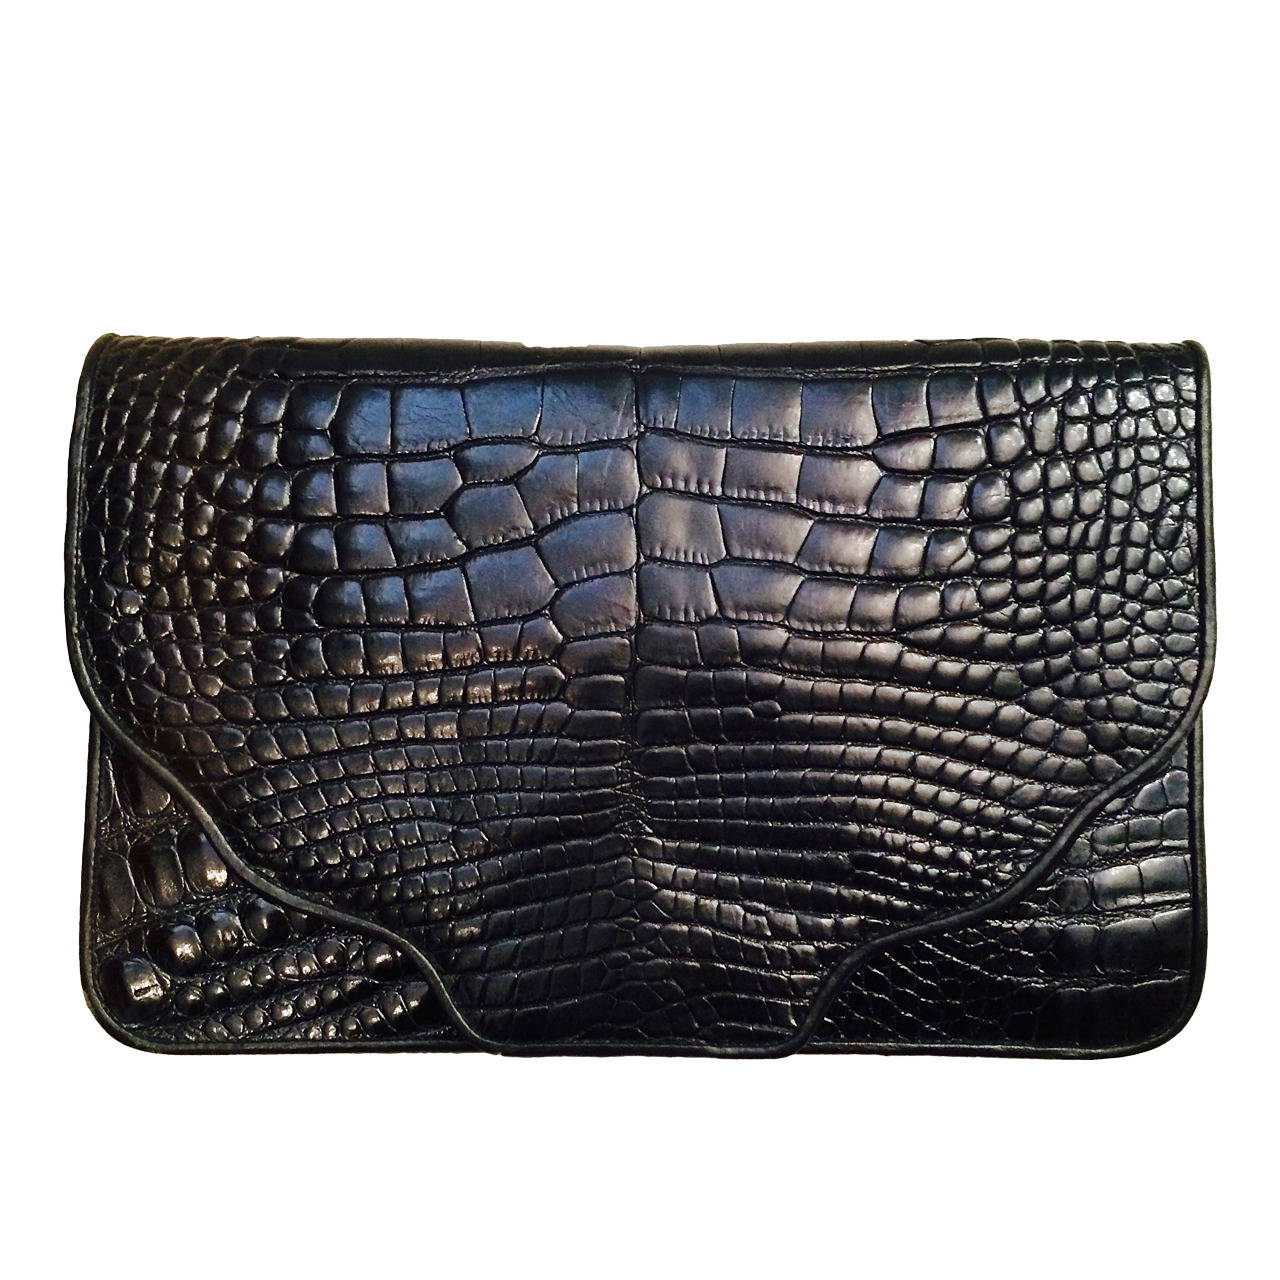 1980s Large black alligator envelope clutch handbag